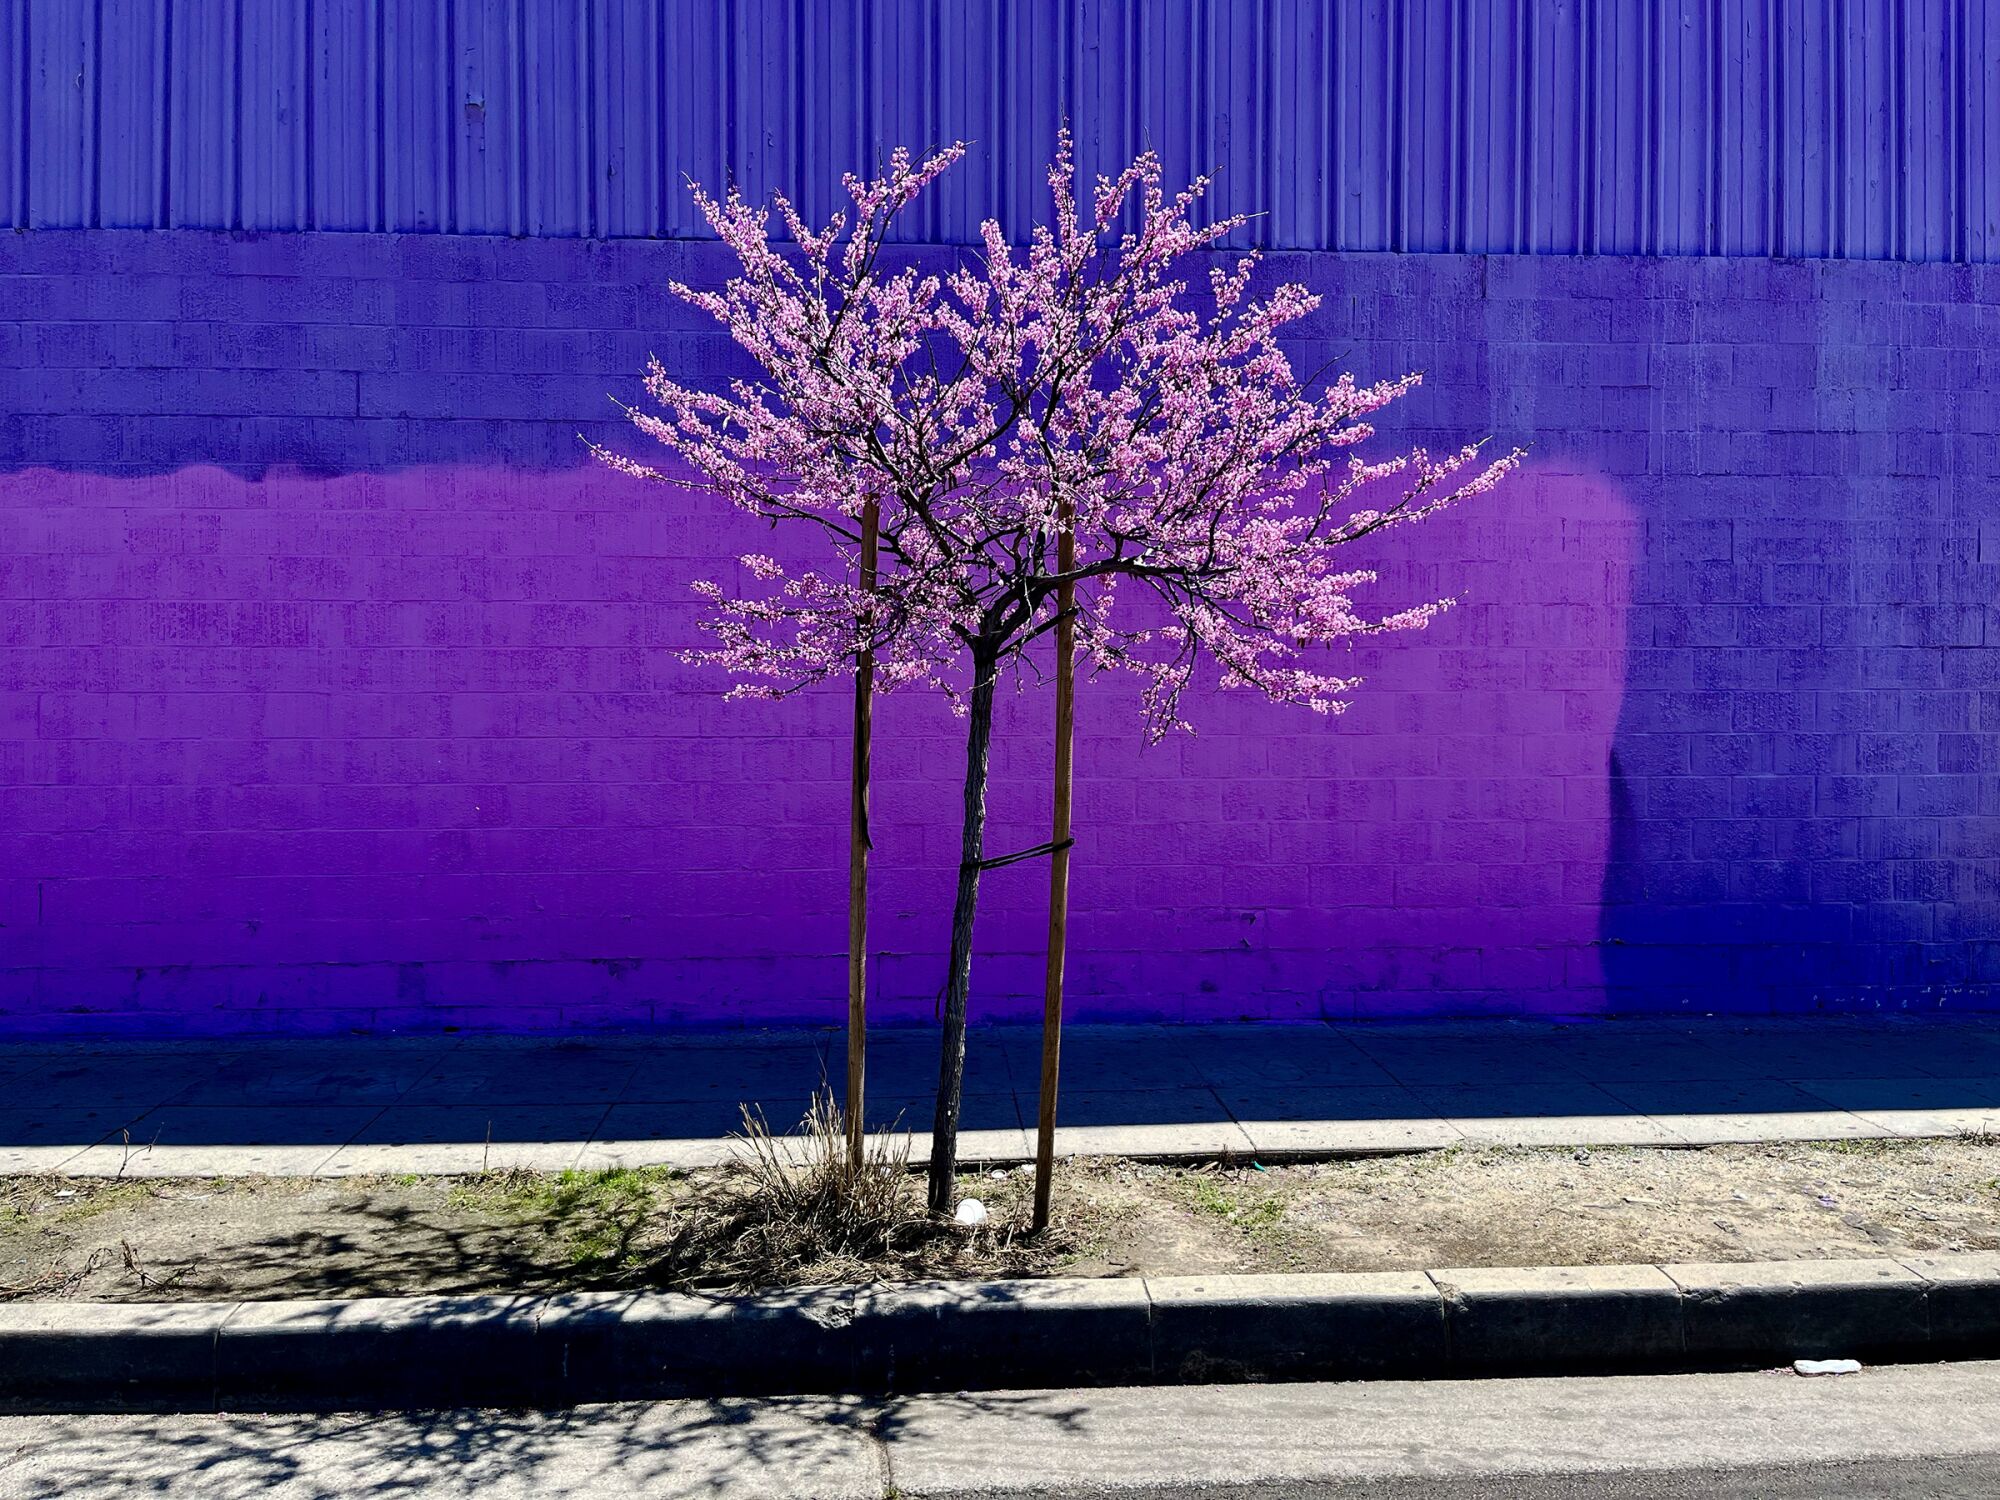 दक्षिण लॉस एंजिल्स में एक बैंगनी दीवार के सामने एक पूर्वी रेडबड का पेड़।